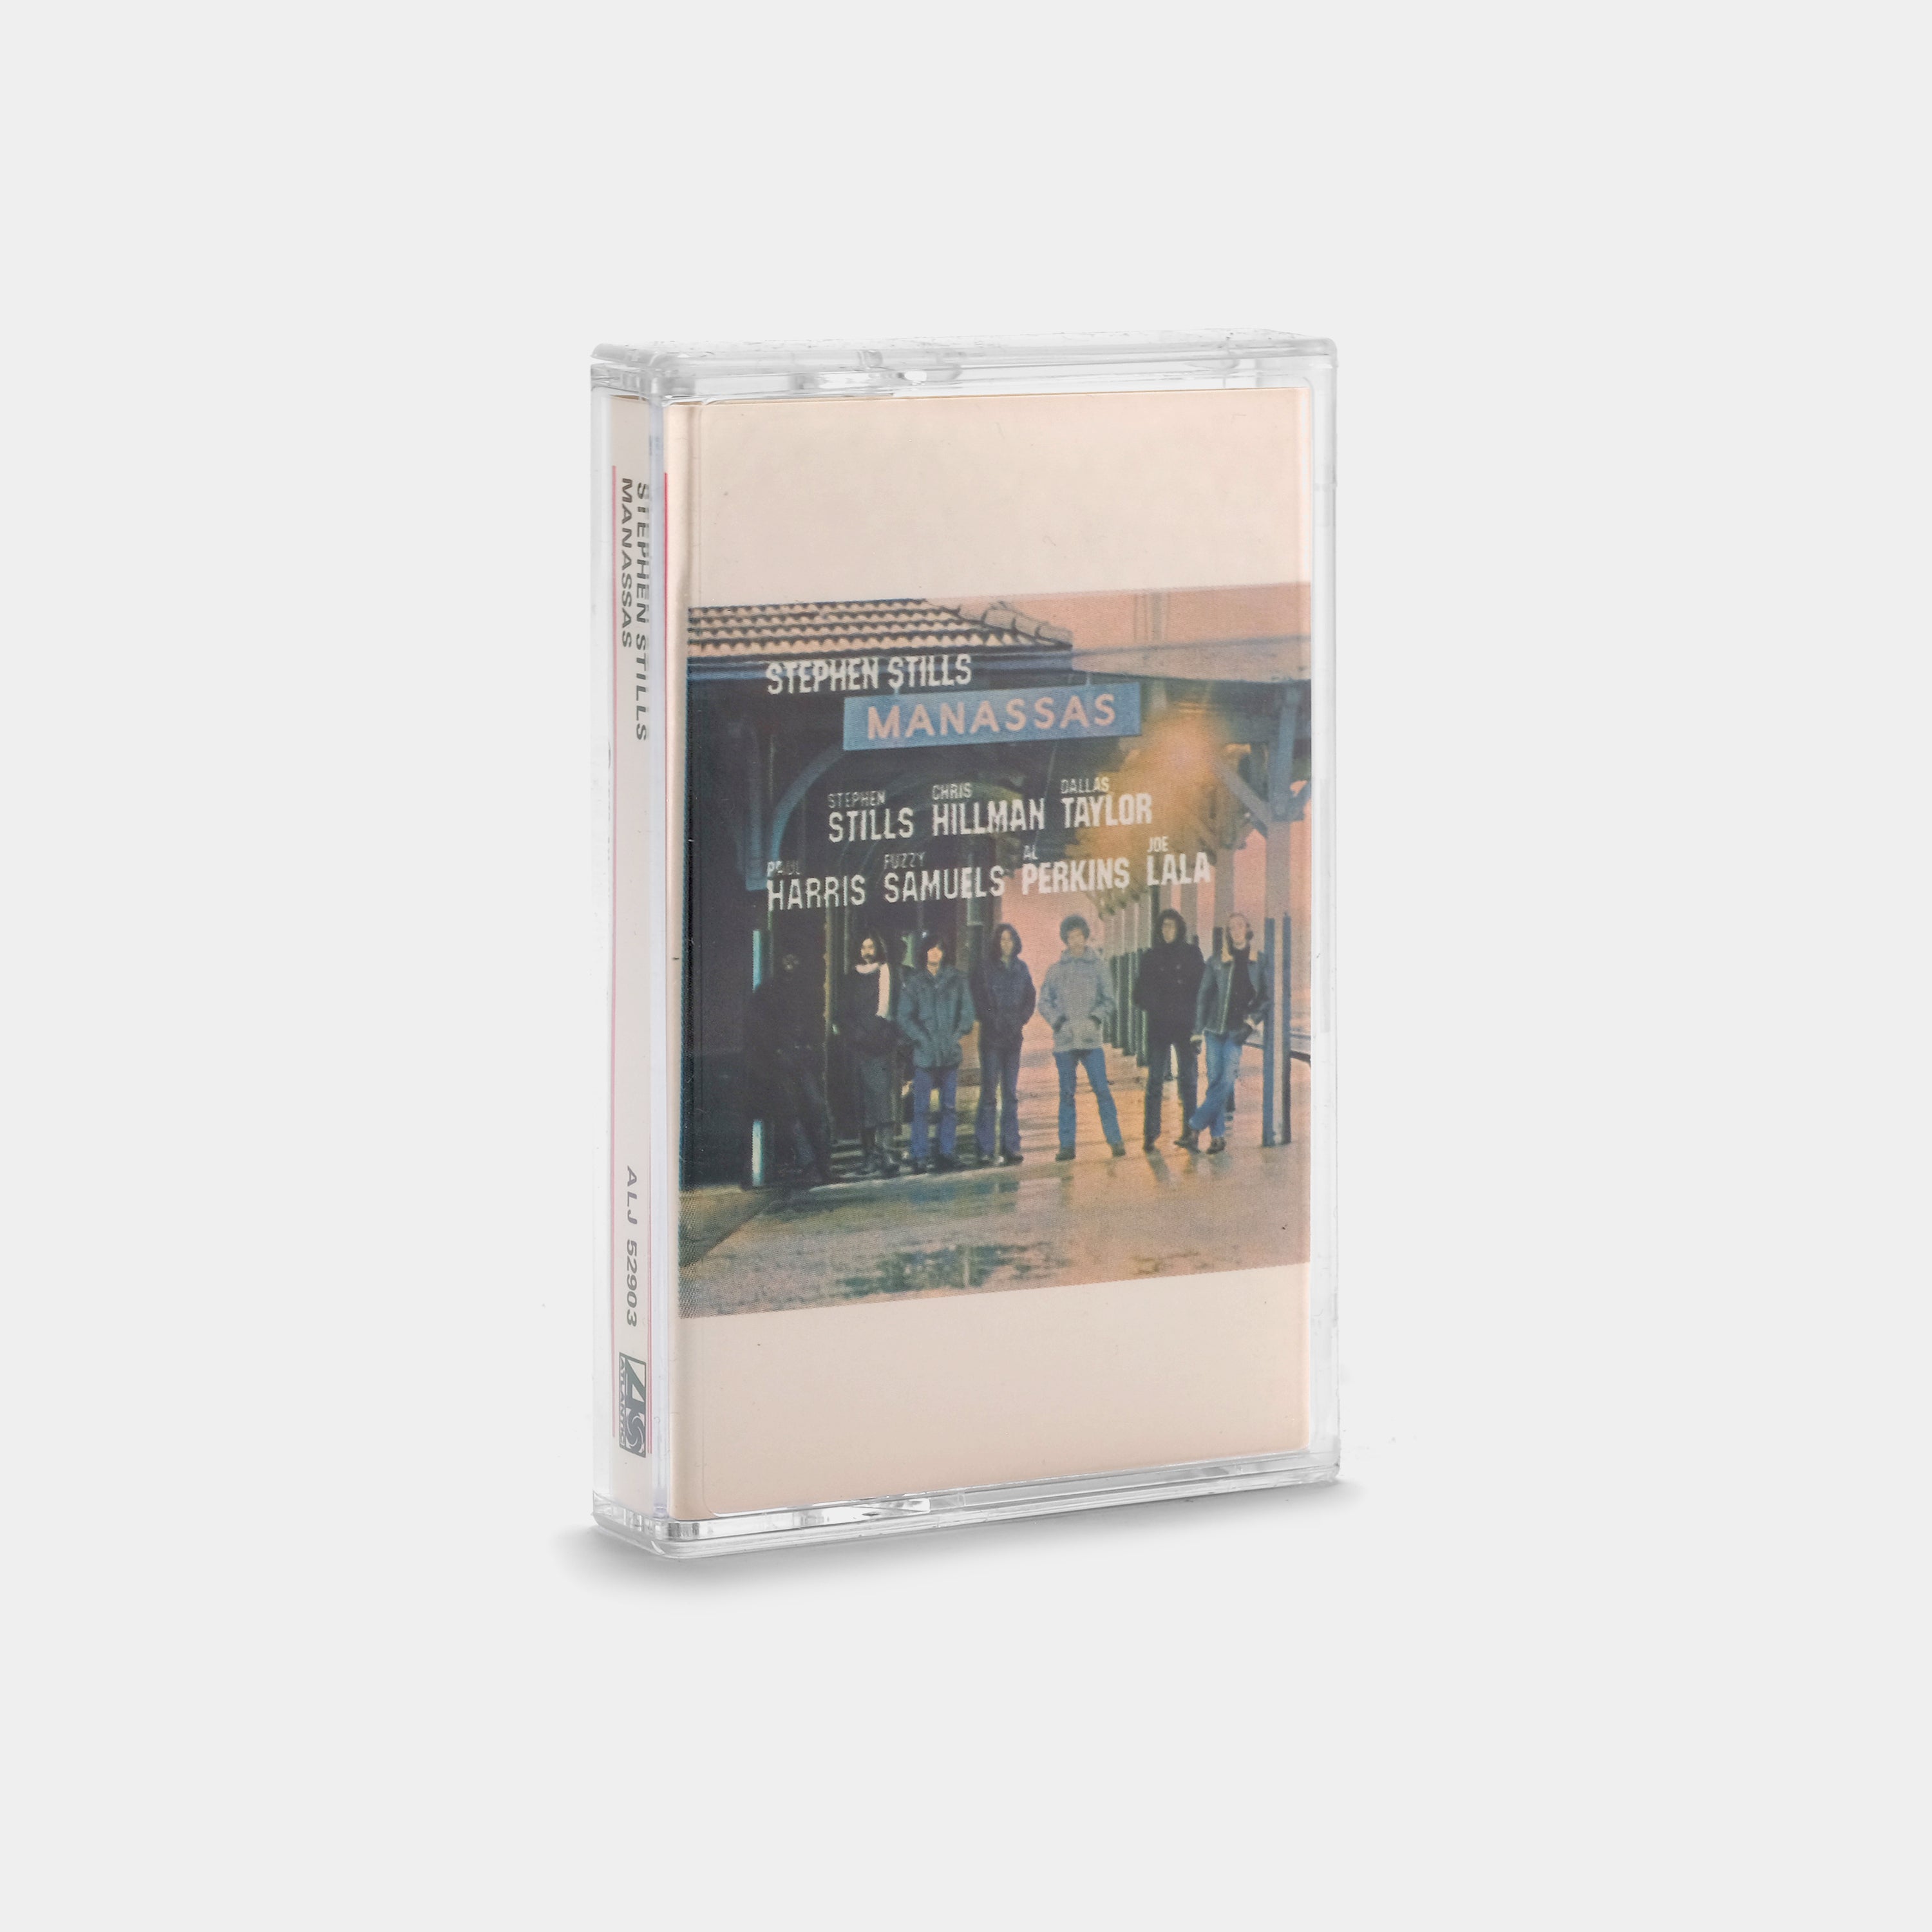 Stephen Stills - Manassas Cassette Tape